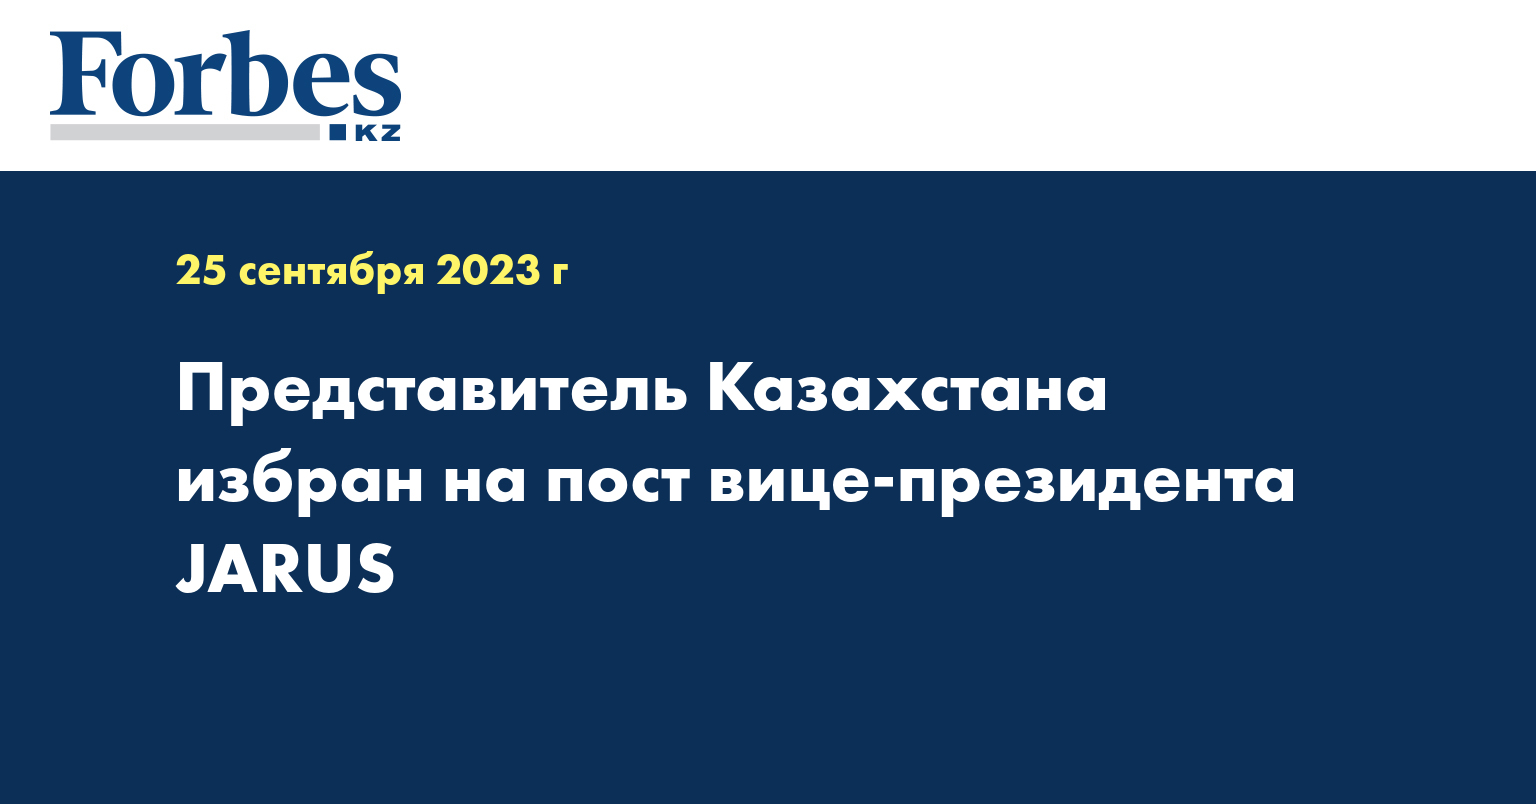 Представитель Казахстана избран на пост вице-президента JARUS